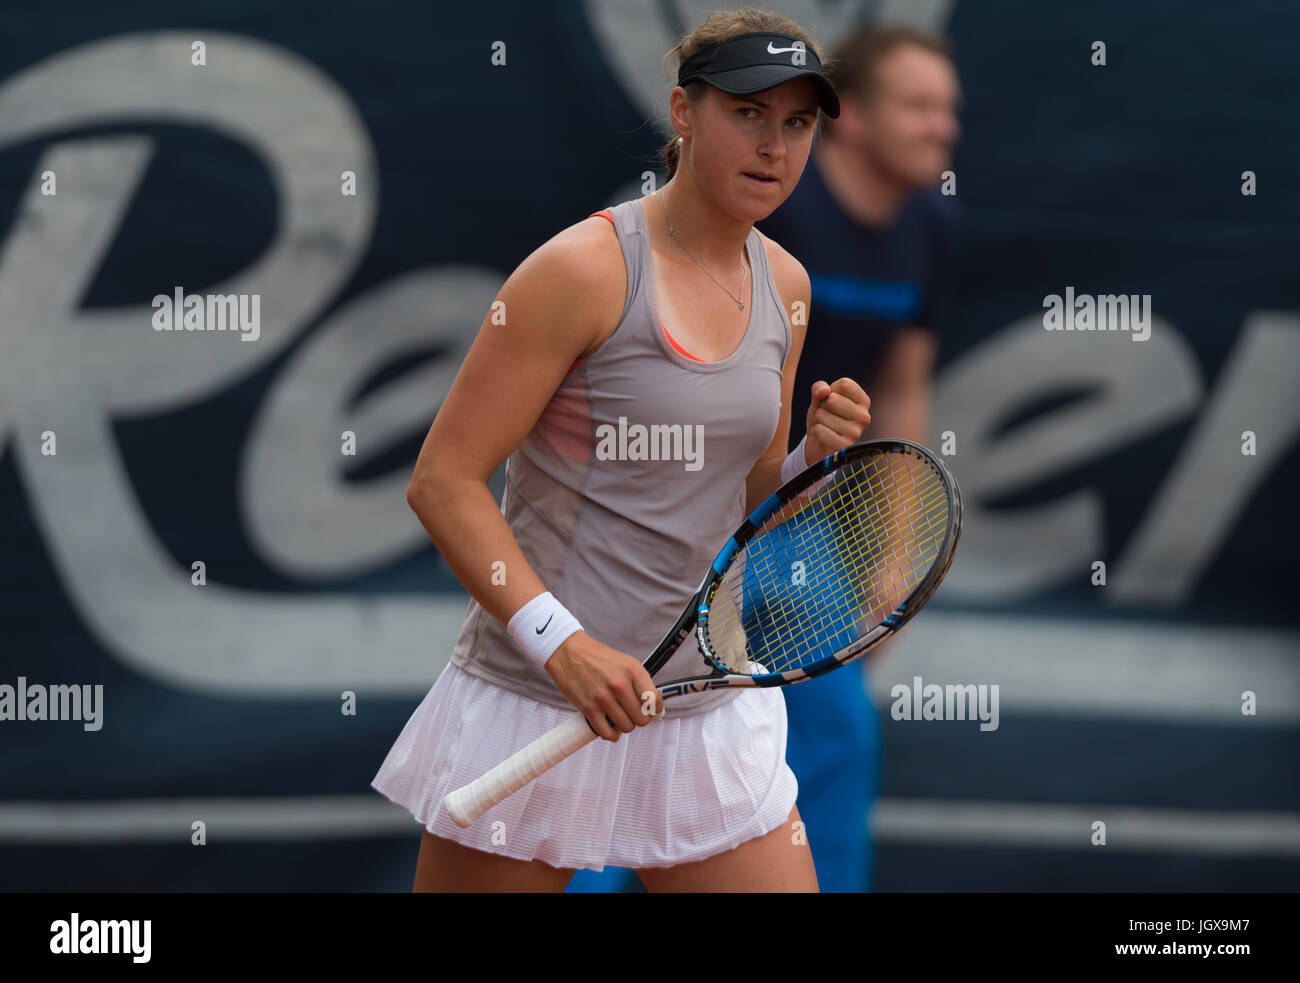 Versmold, Deutschland. 11. Juli 2017. Rebecca Peterson beim Tennisturnier 2017 Reinert Open ITF $60 © Jimmie48 Fotografie/Alamy Live News Stockfoto